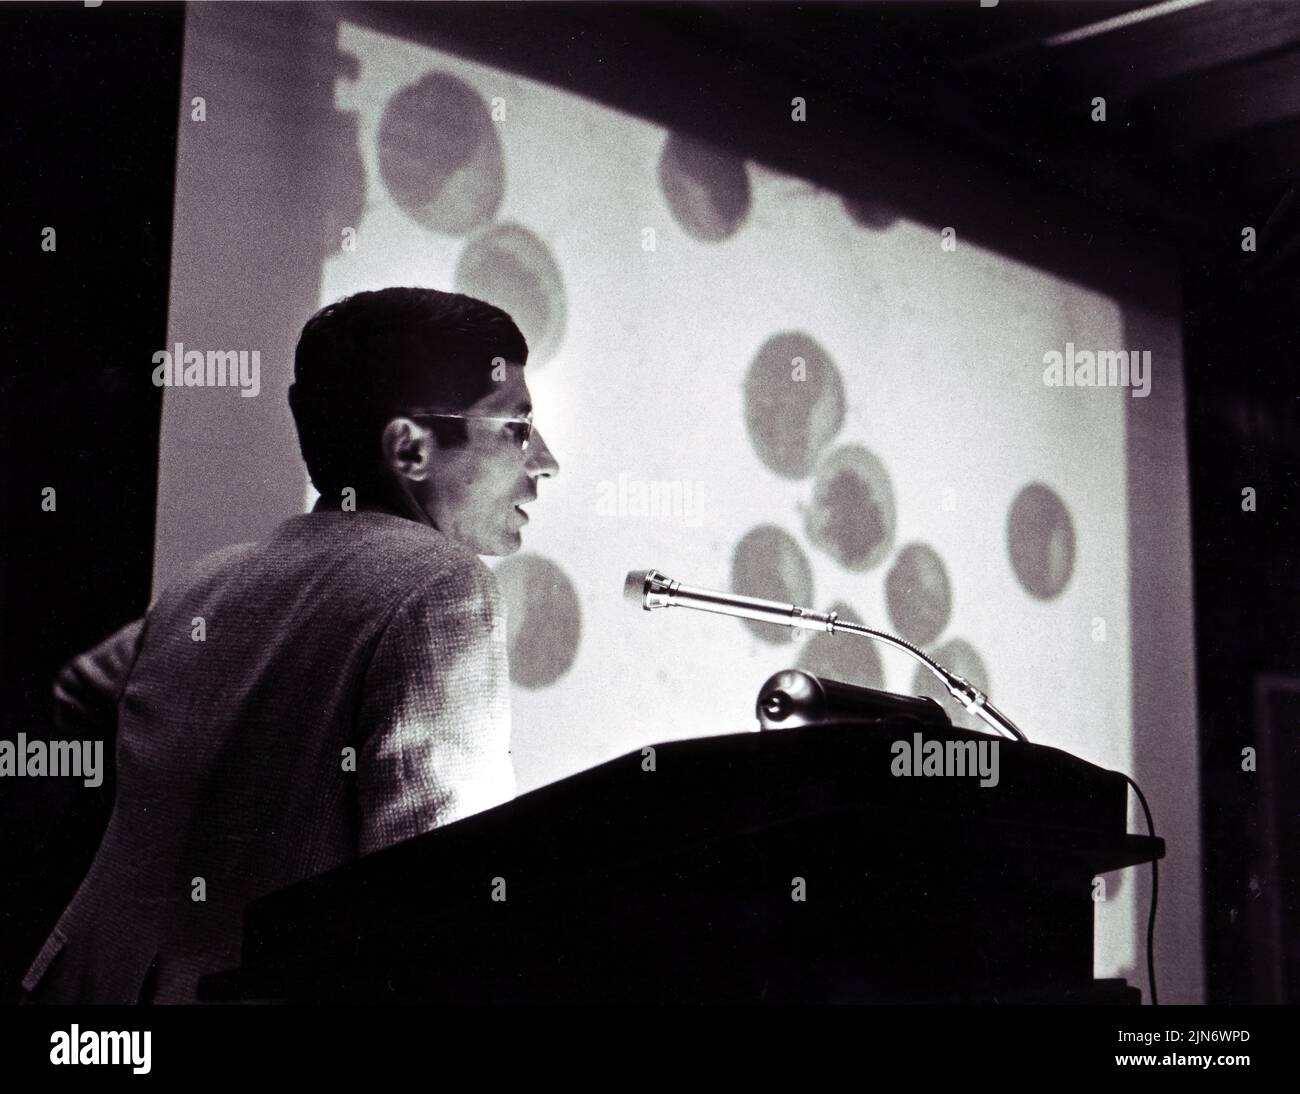 Anthony Fauci Speaking, 1985 El Dr. Anthony Fauci pronunció una charla relacionada con el SIDA en 1985. Crédito: NIAID Foto de stock